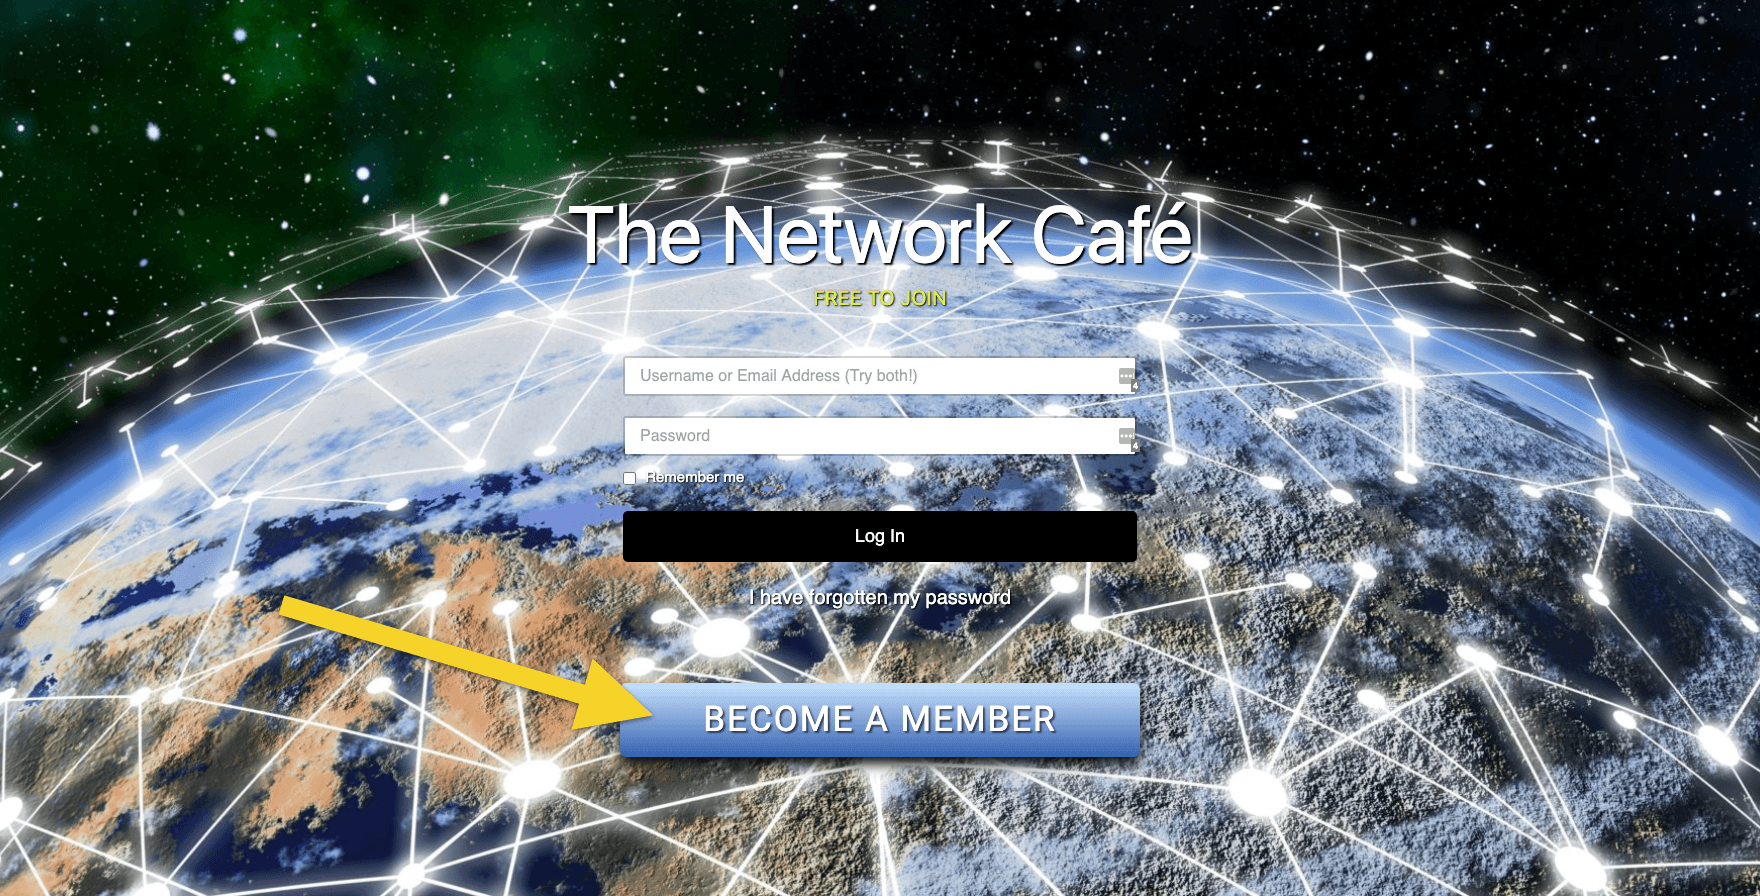 The Network Café